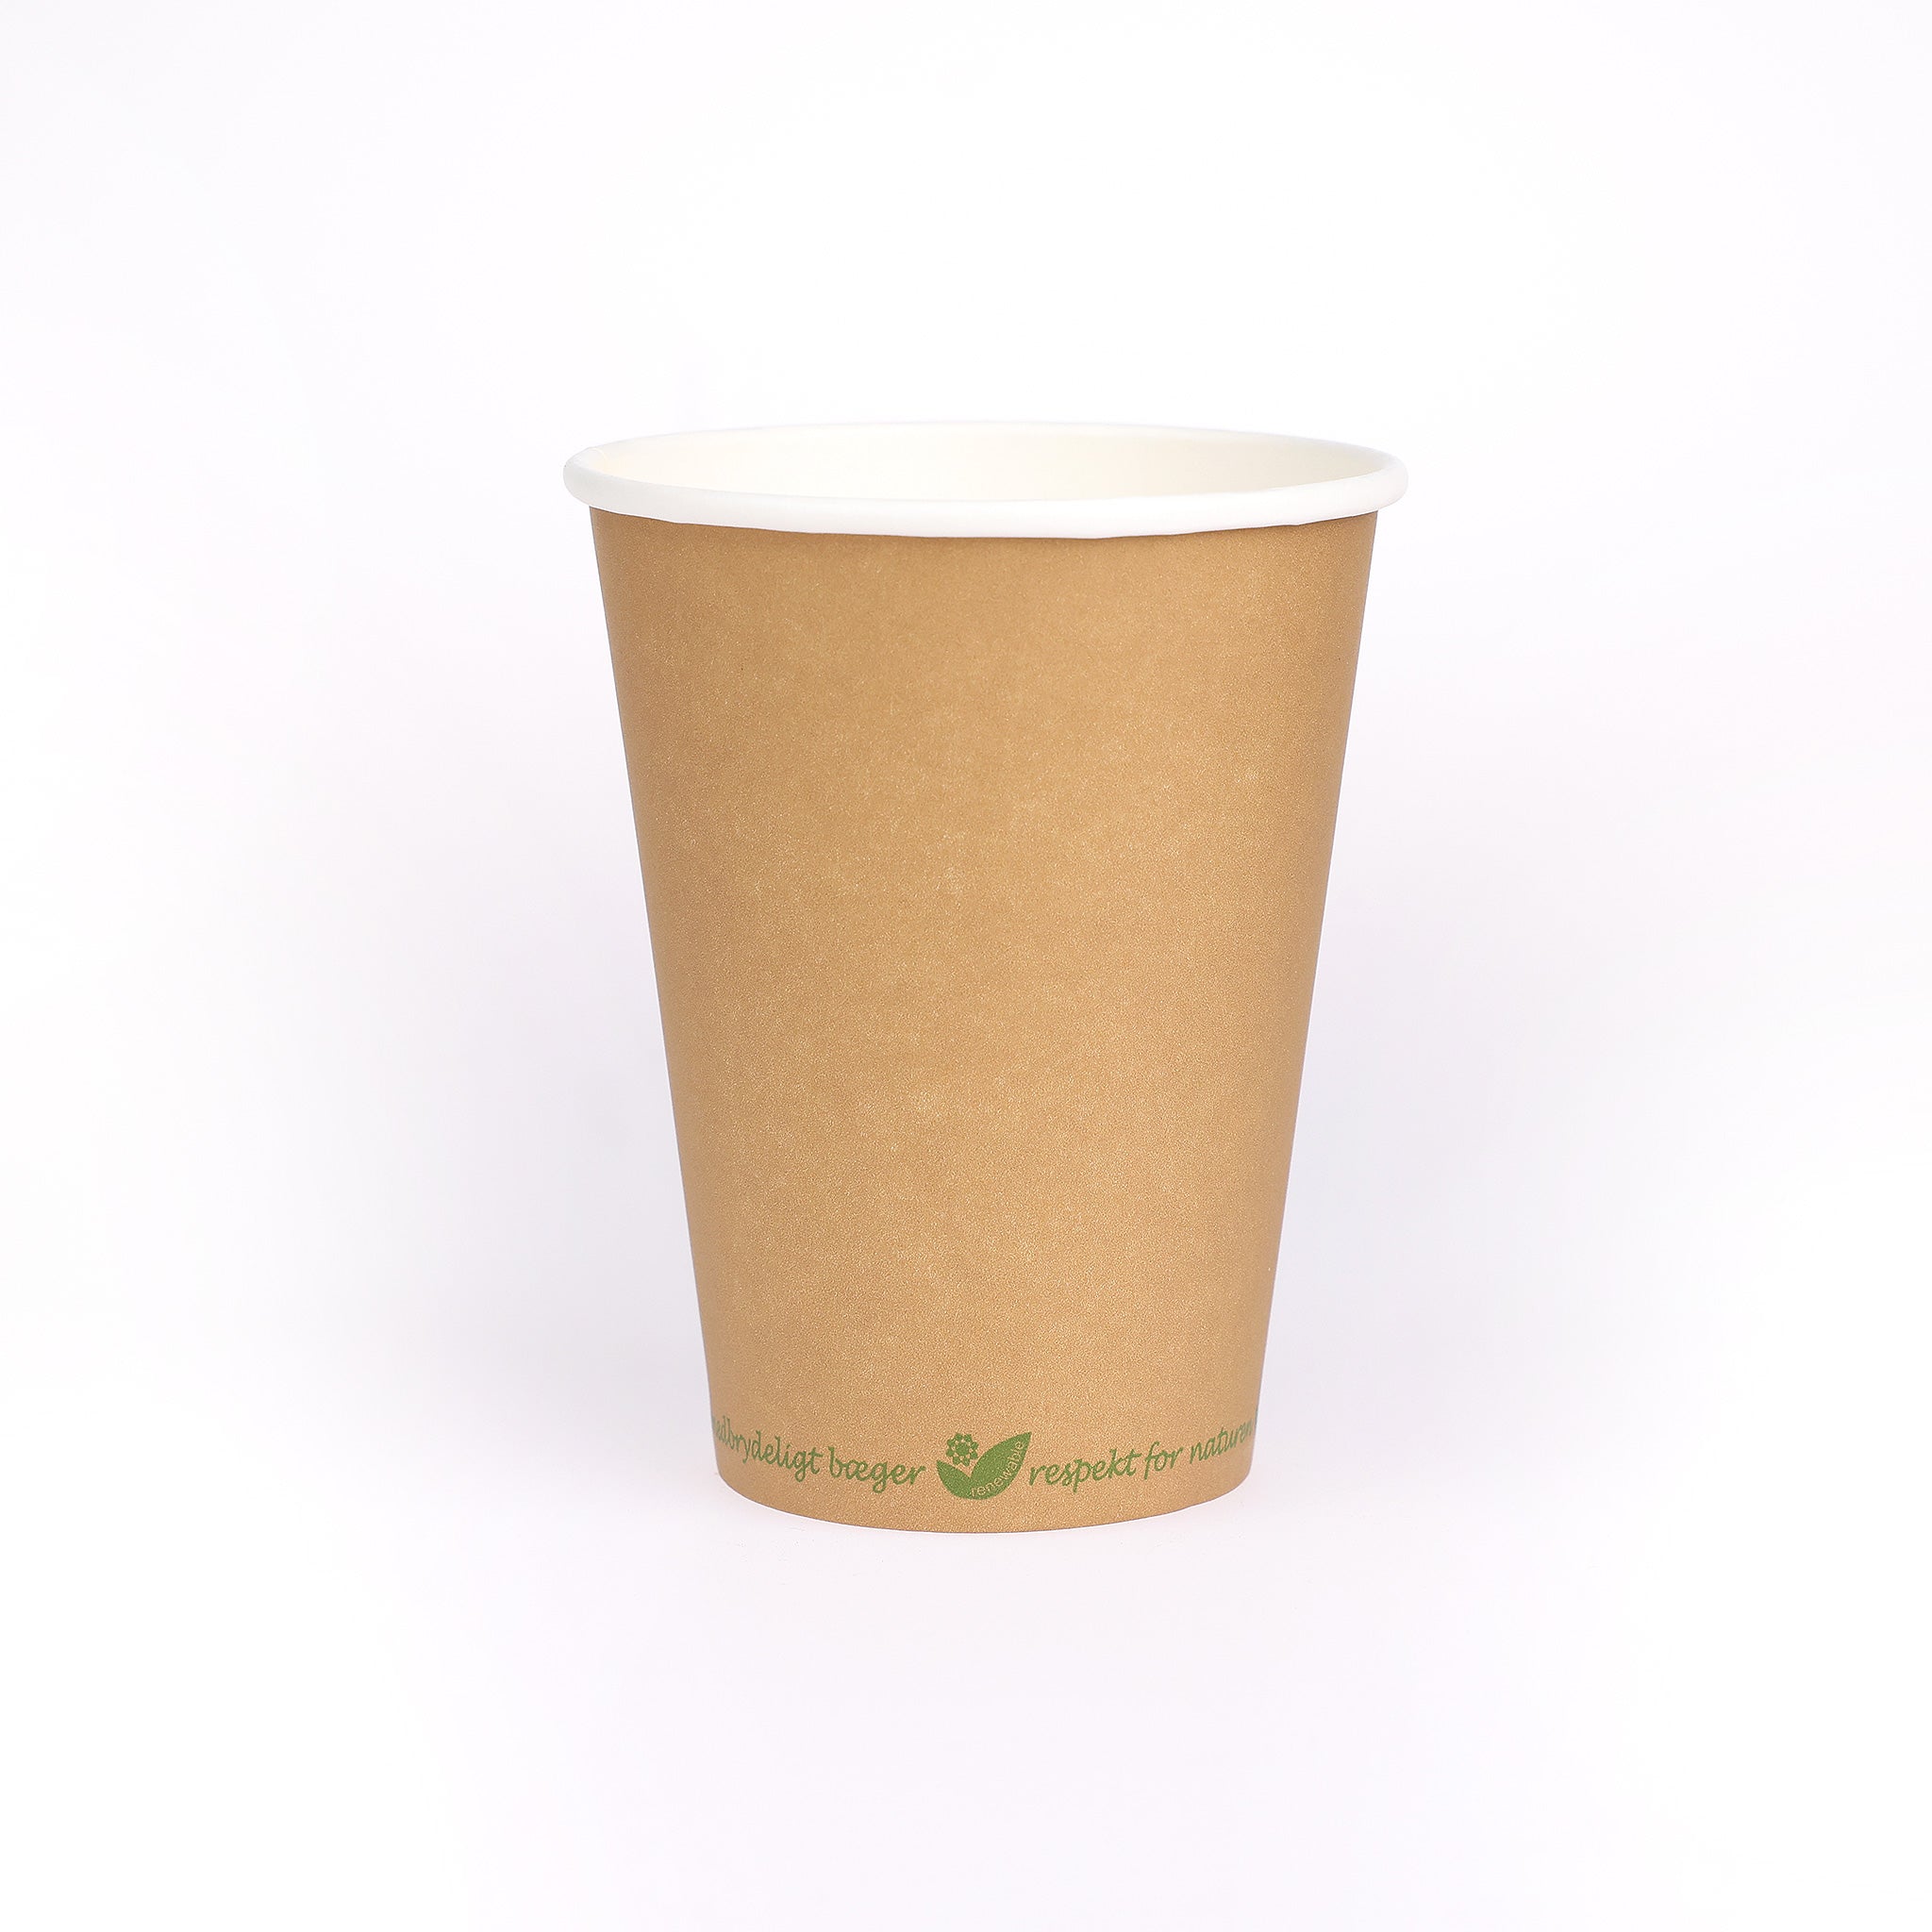 Bionedbrydeligt kaffebæger i miljøvenligt pap. Med PLA på indersiden, der sikrer høj tæthed. Kaffebægeret kan indeholde 30 cl.